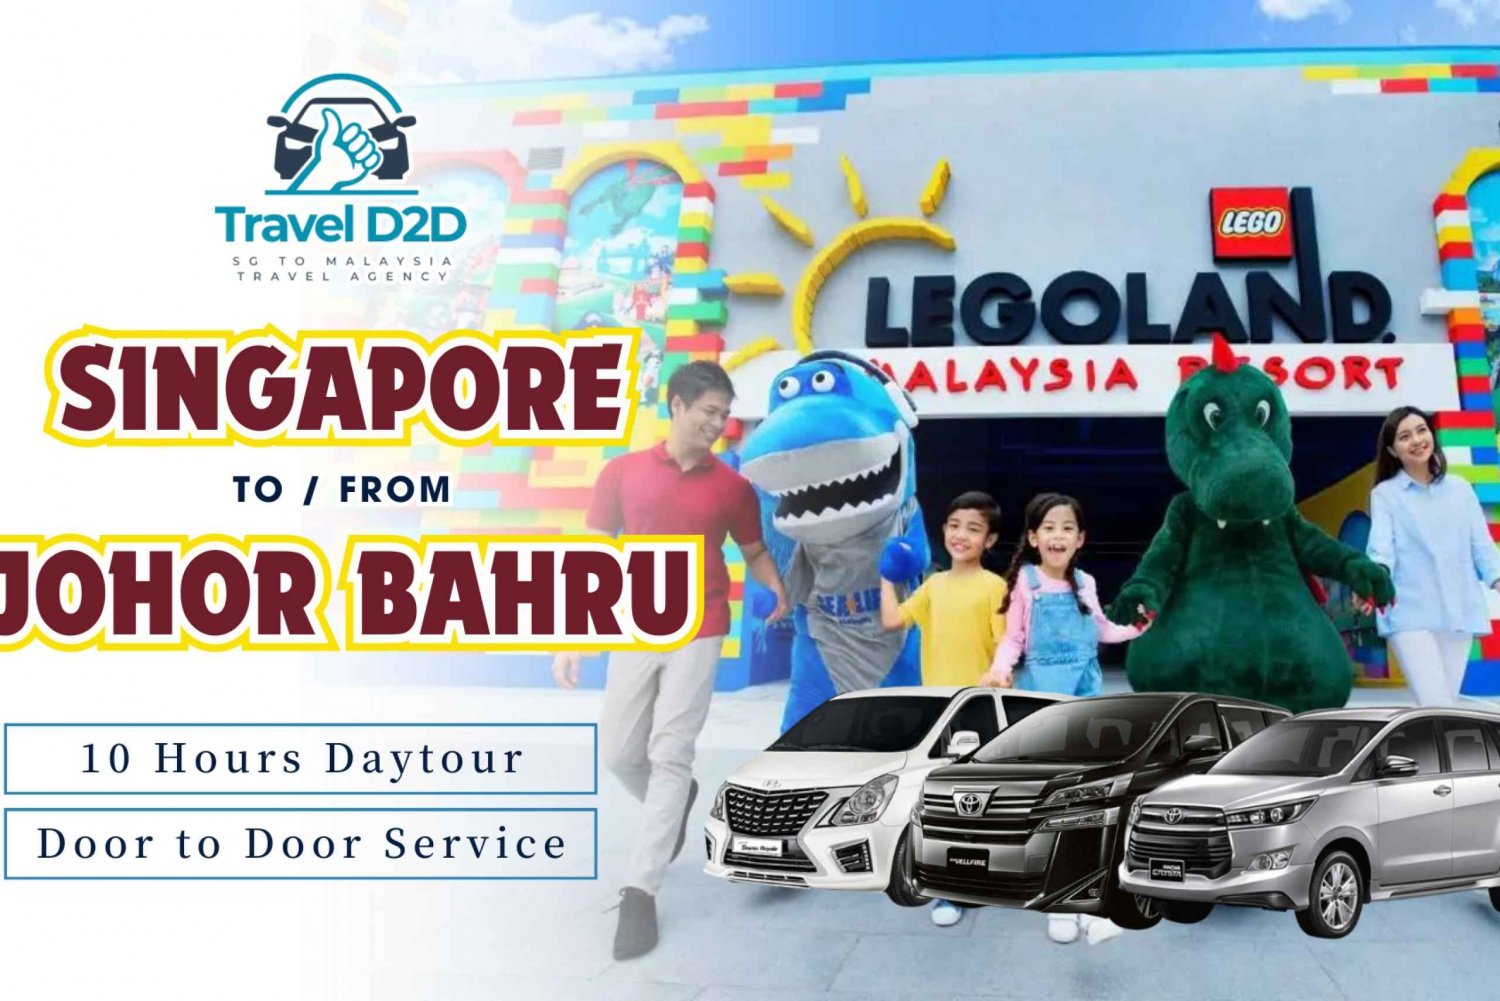 Singapore Changi Airport (SIN) to Legoland Malaysia Daytour